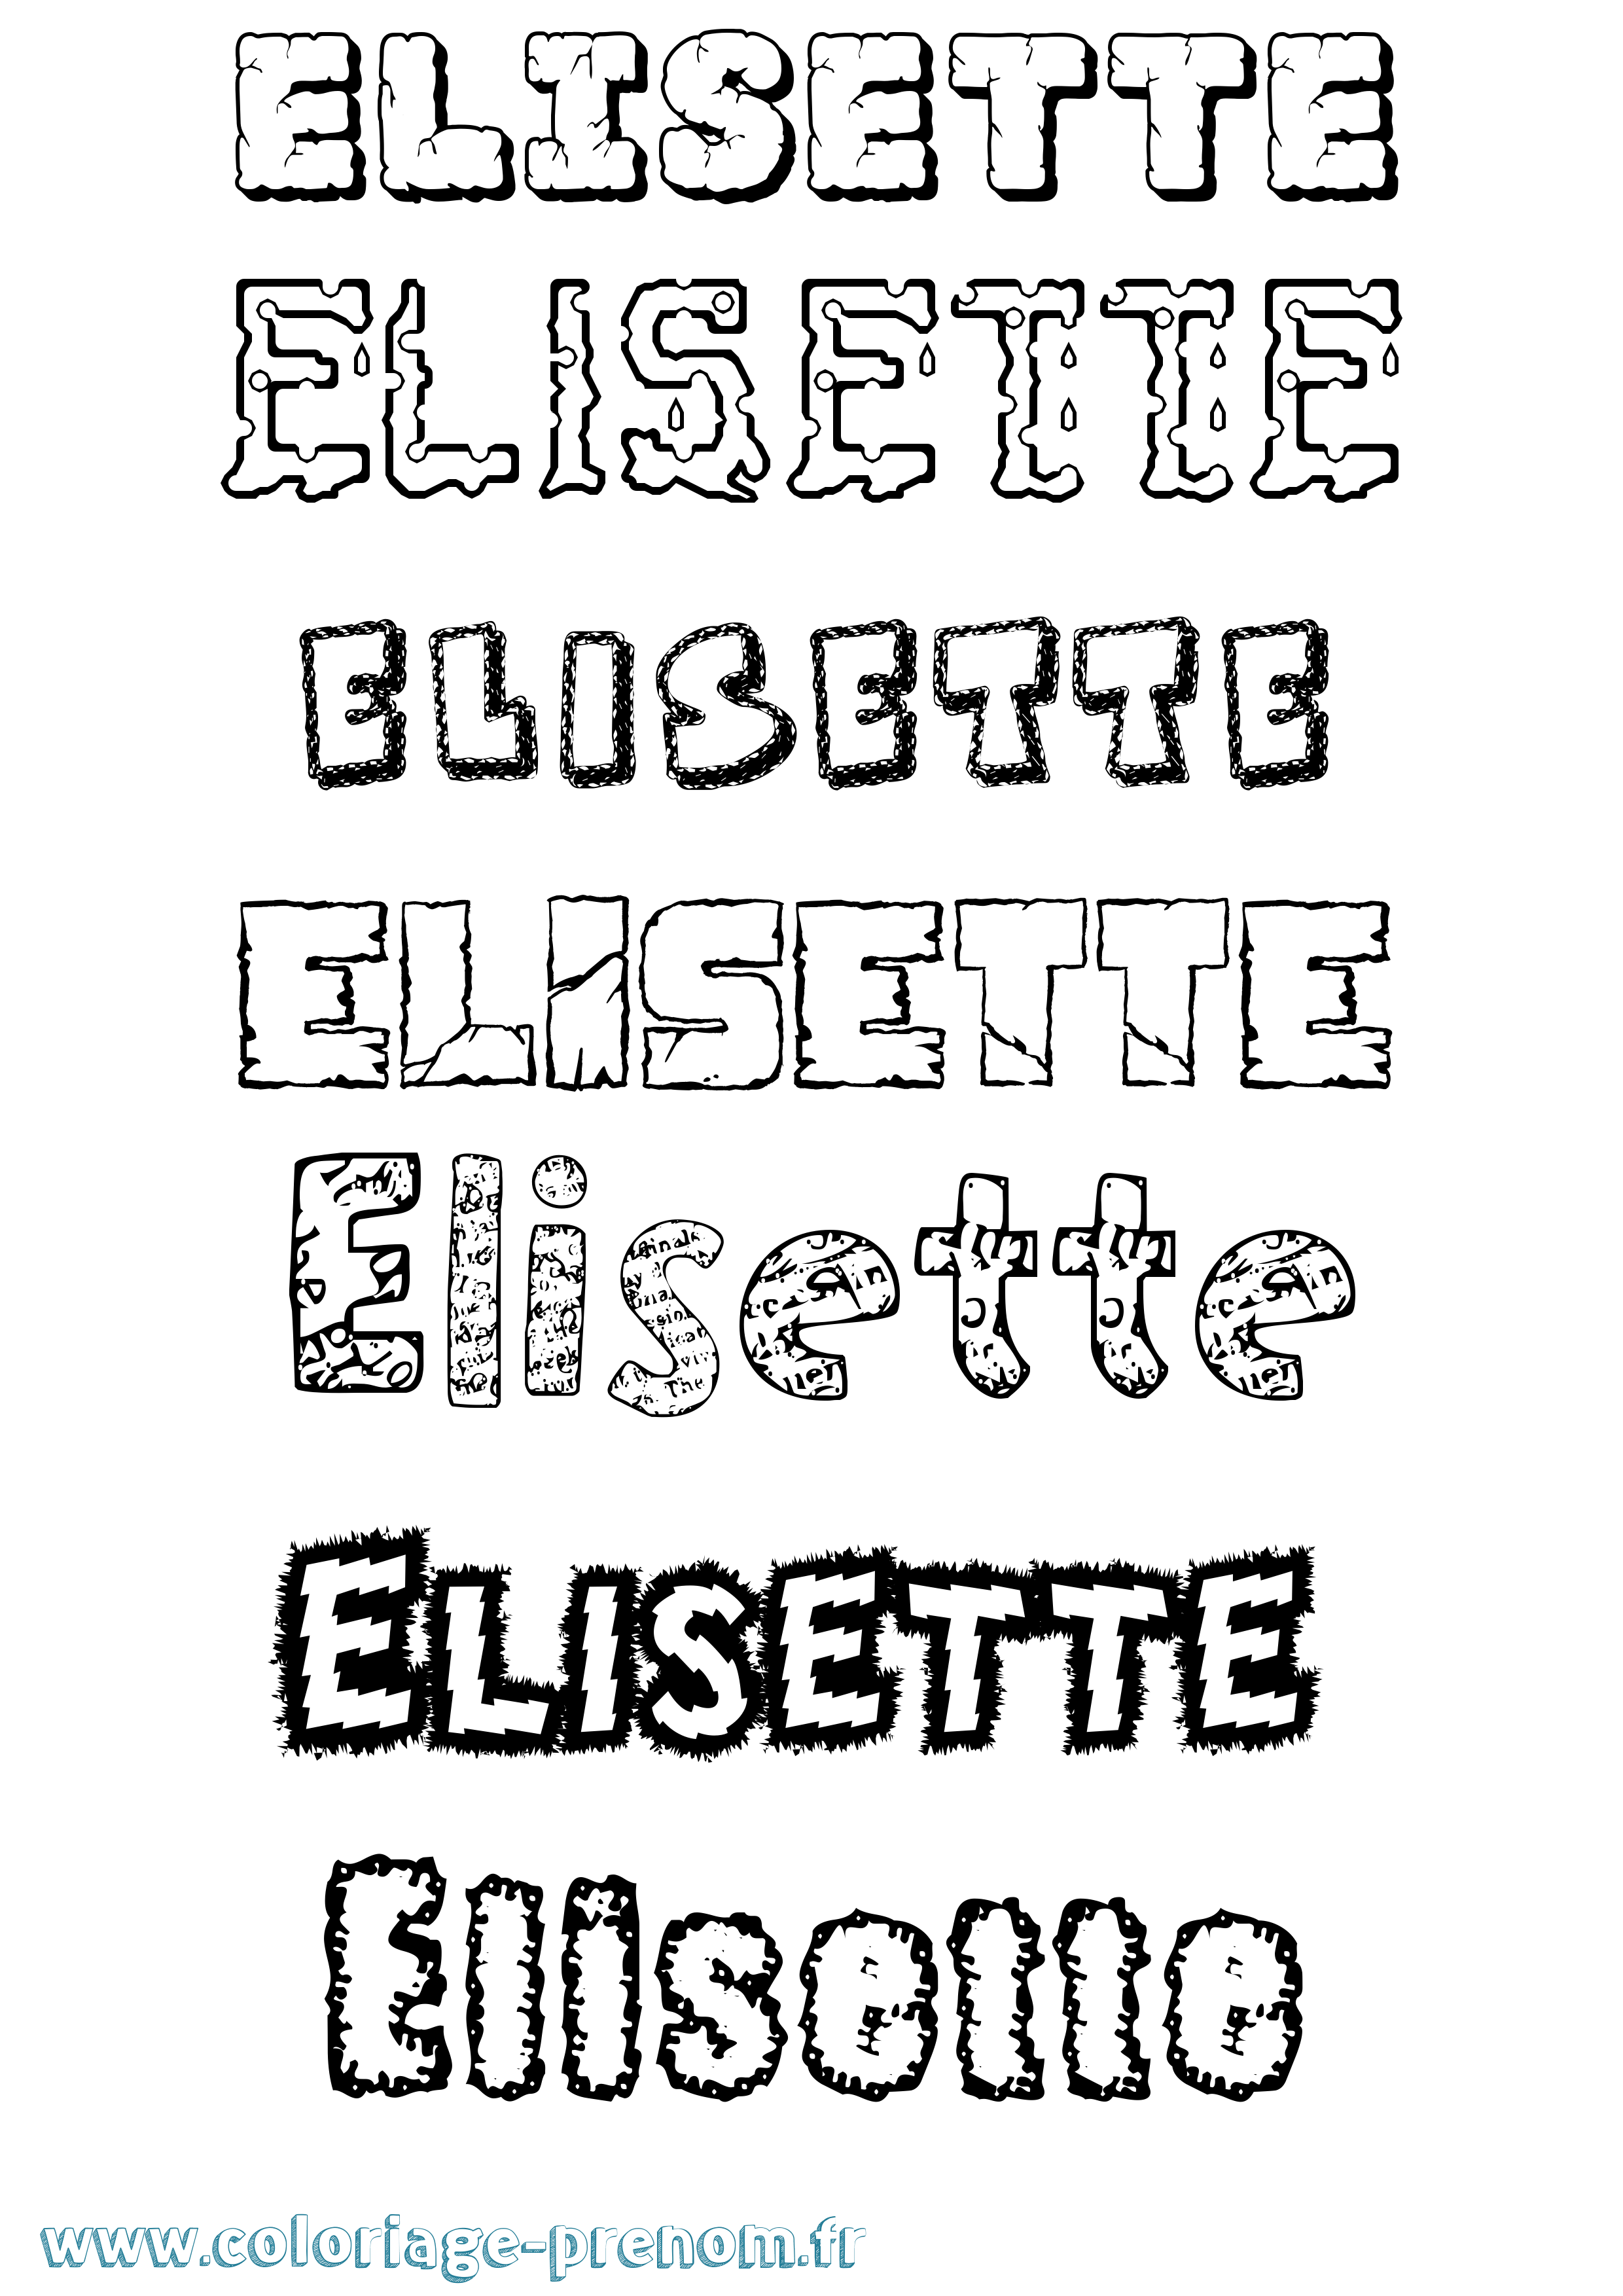 Coloriage prénom Elisette Destructuré